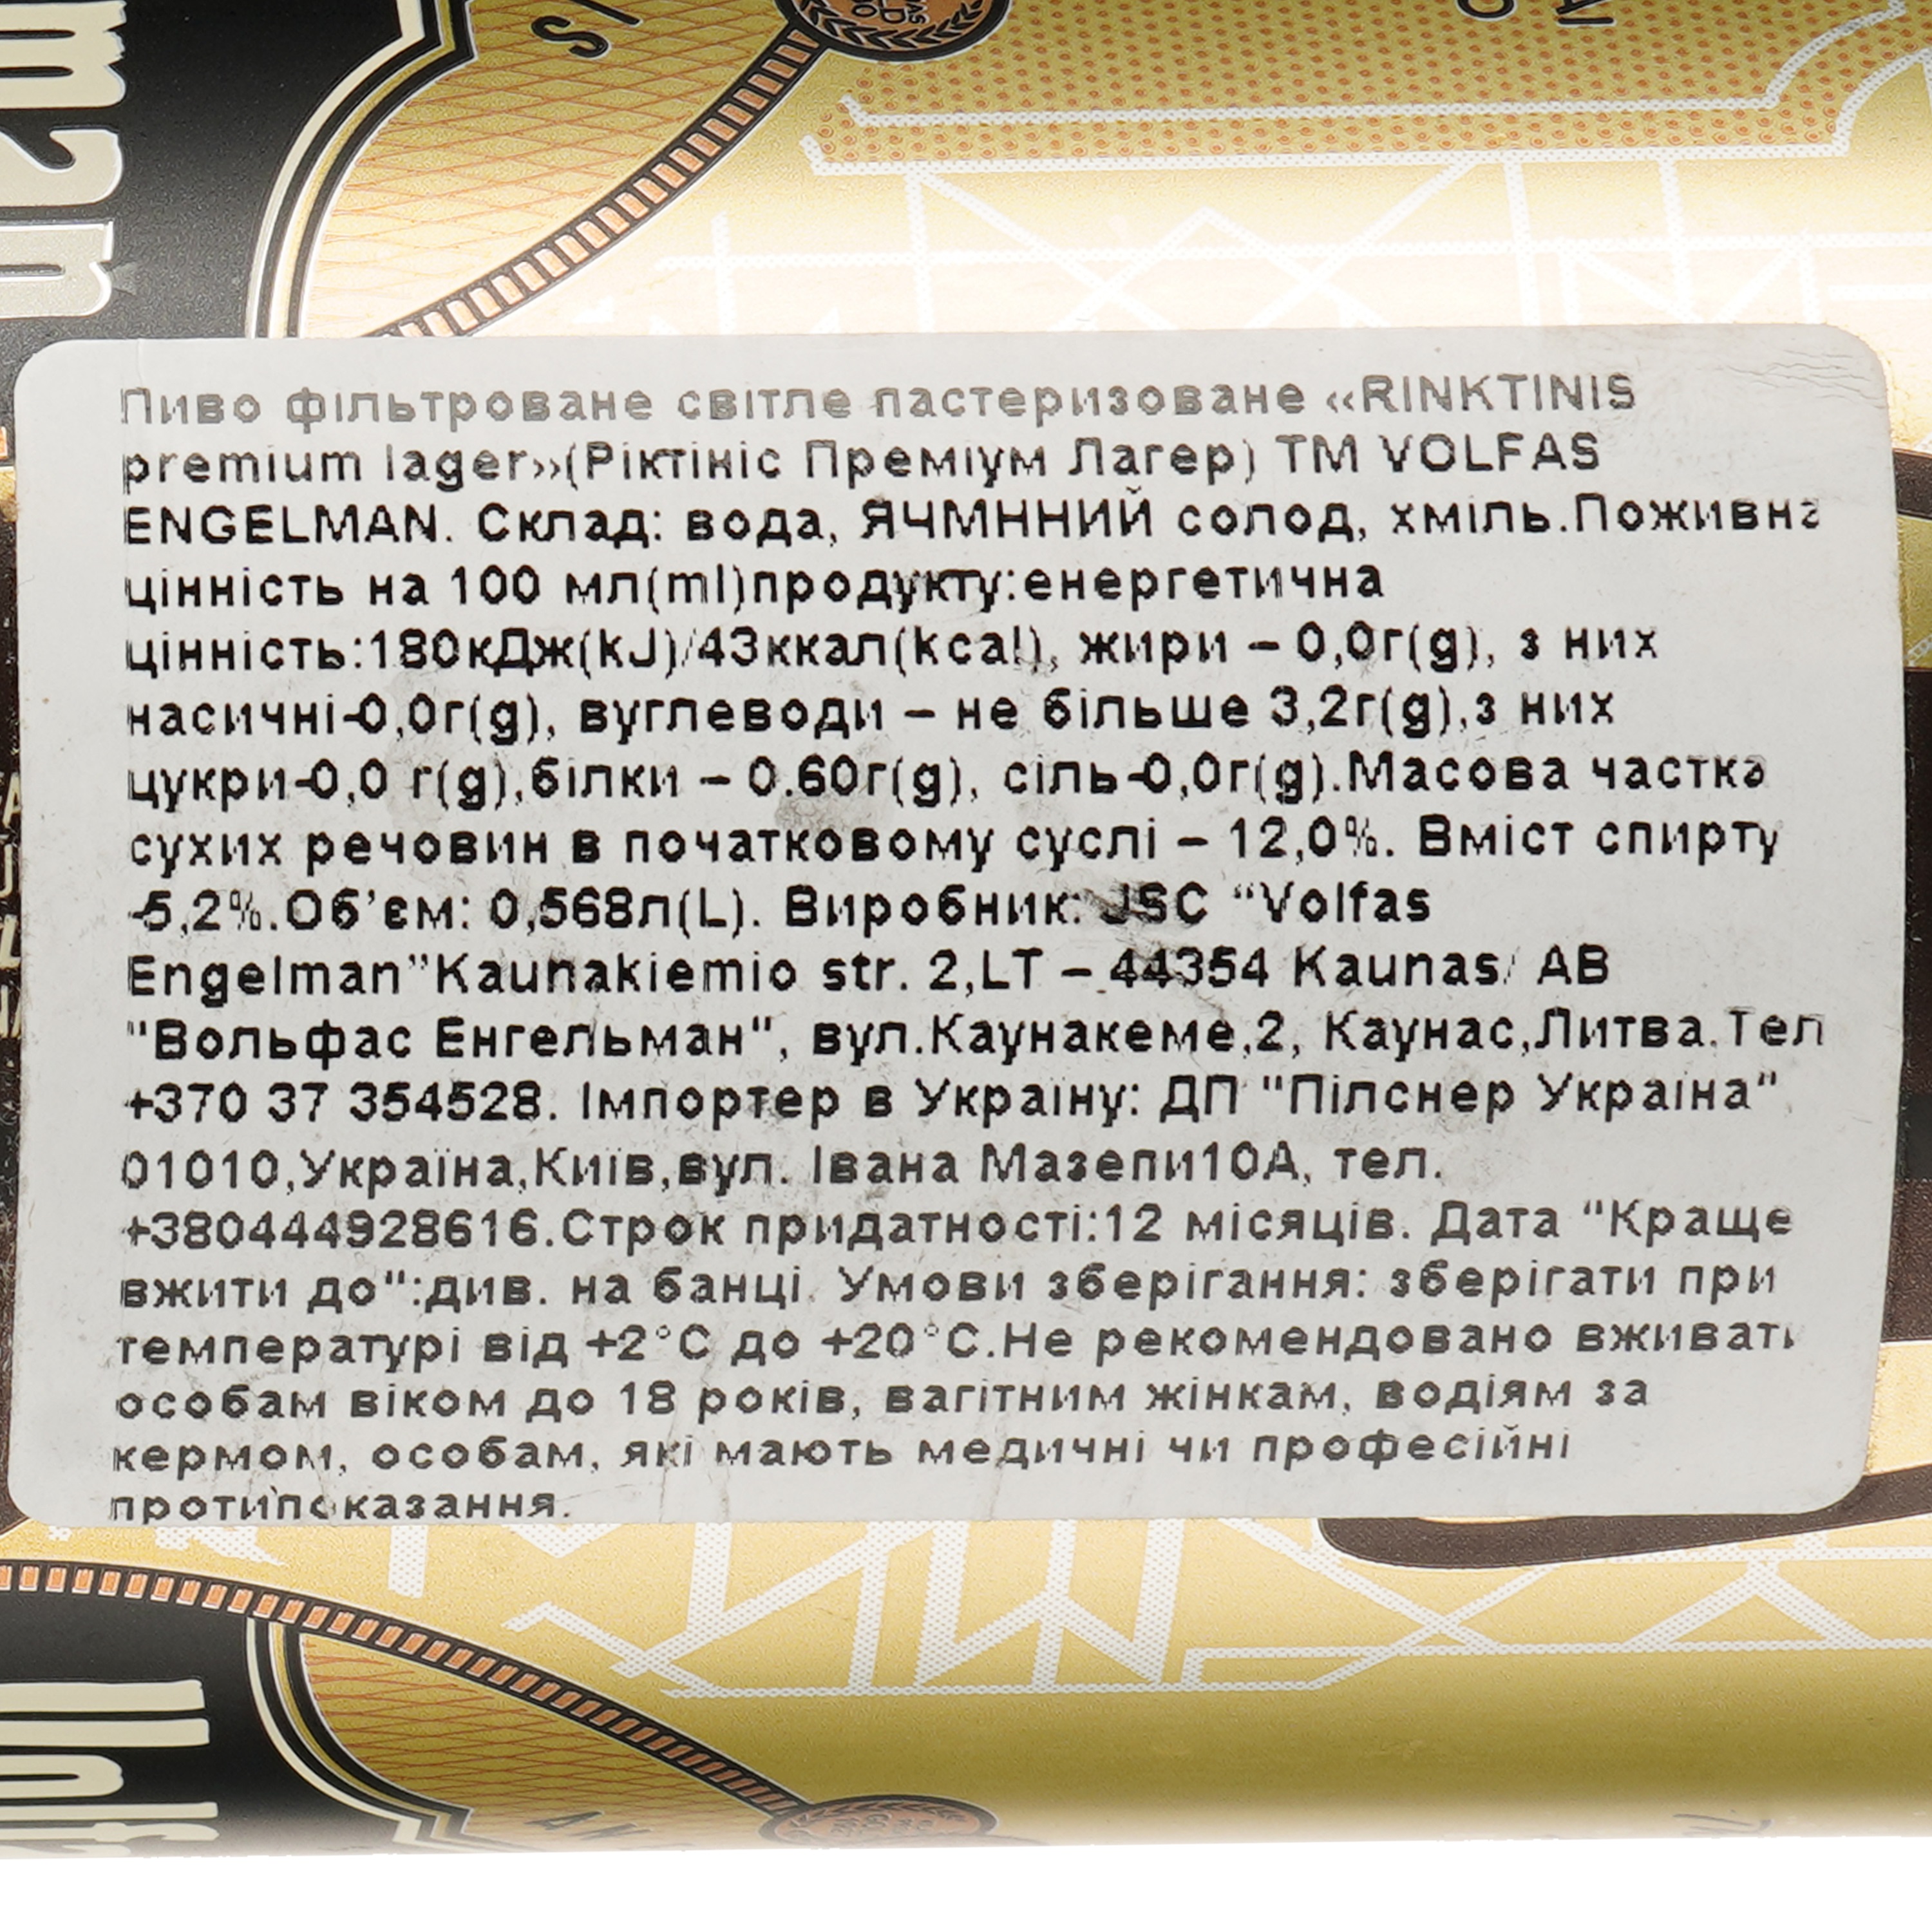 Пиво Volfas Engelman Rinktinis светлое 5.2% 6 шт. х 0.5 л ж/б - фото 4